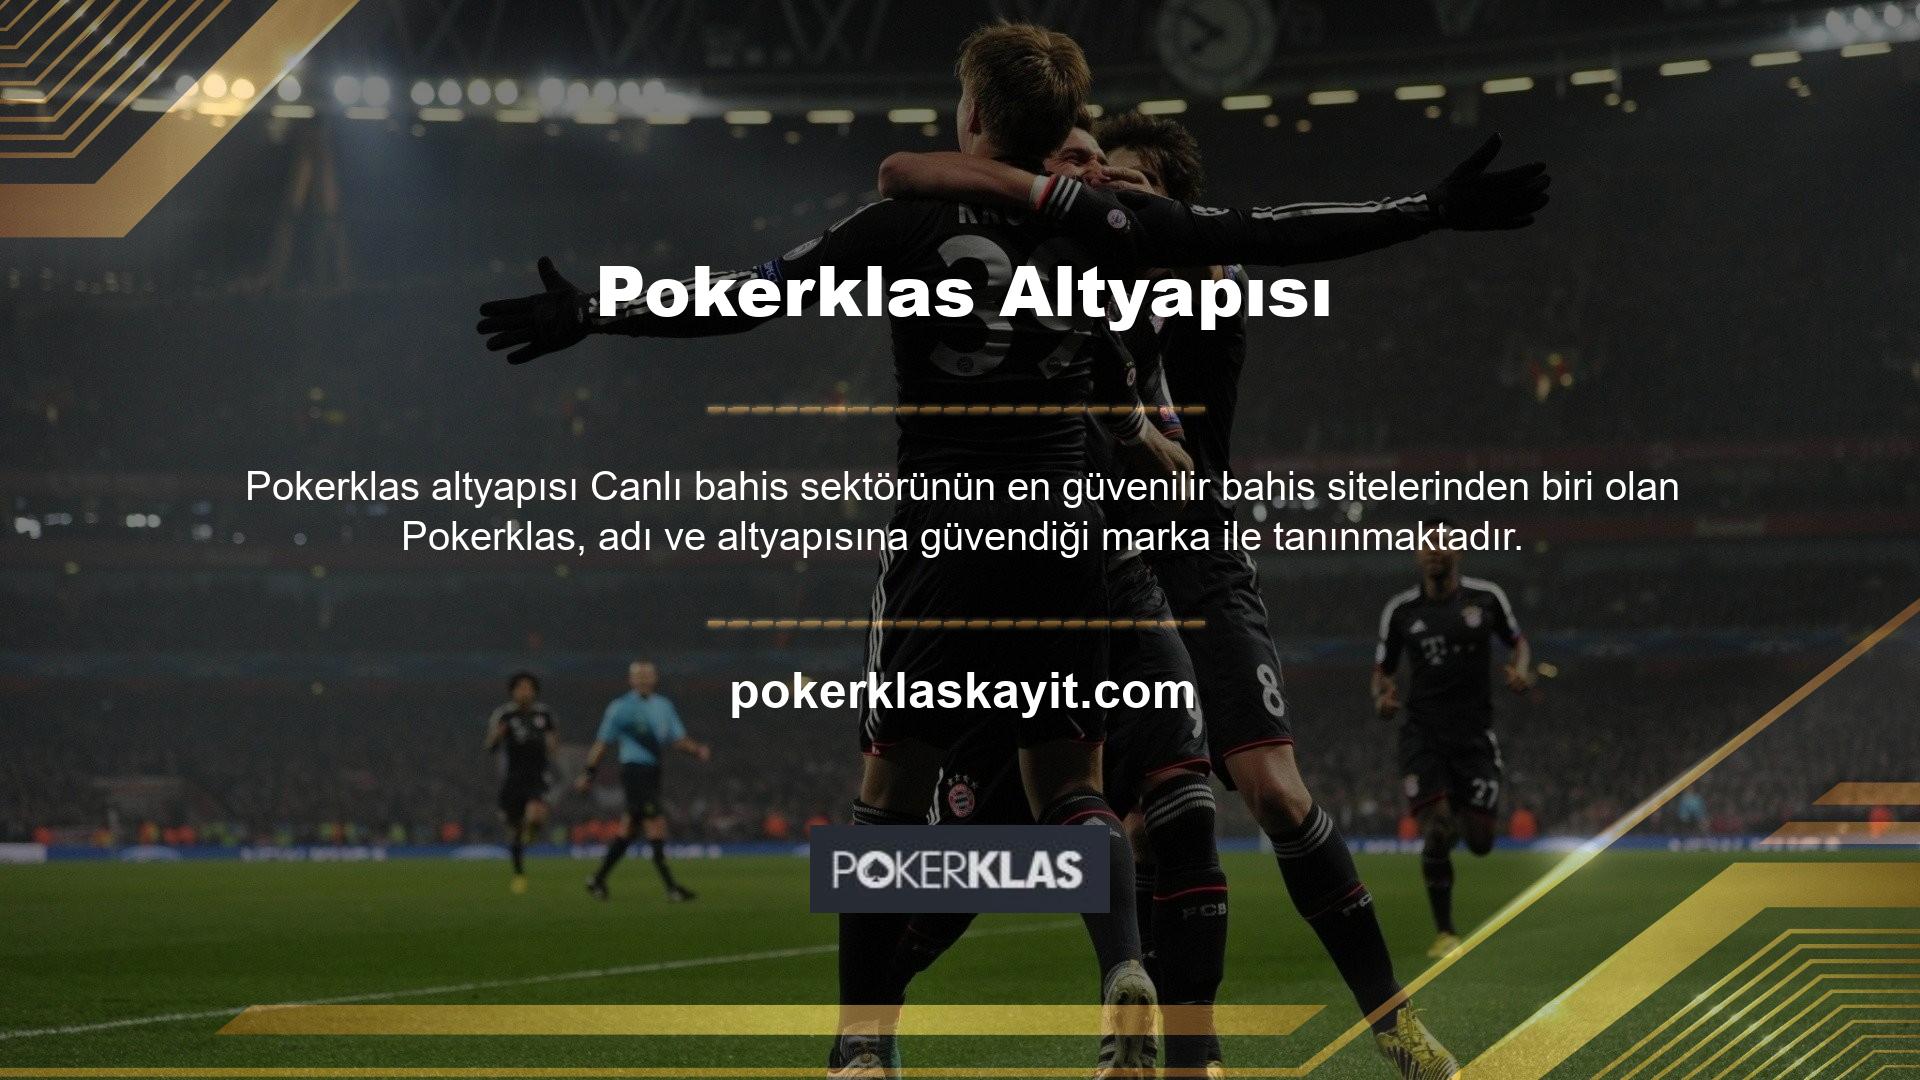 Türk bahis tutkunlarına eğlenceli ve kaliteli bir deneyim sunan Pokerklas sitesi, casino sever demografisinin gördüğü talebe bağlı olarak hızla büyüme potansiyeline sahiptir